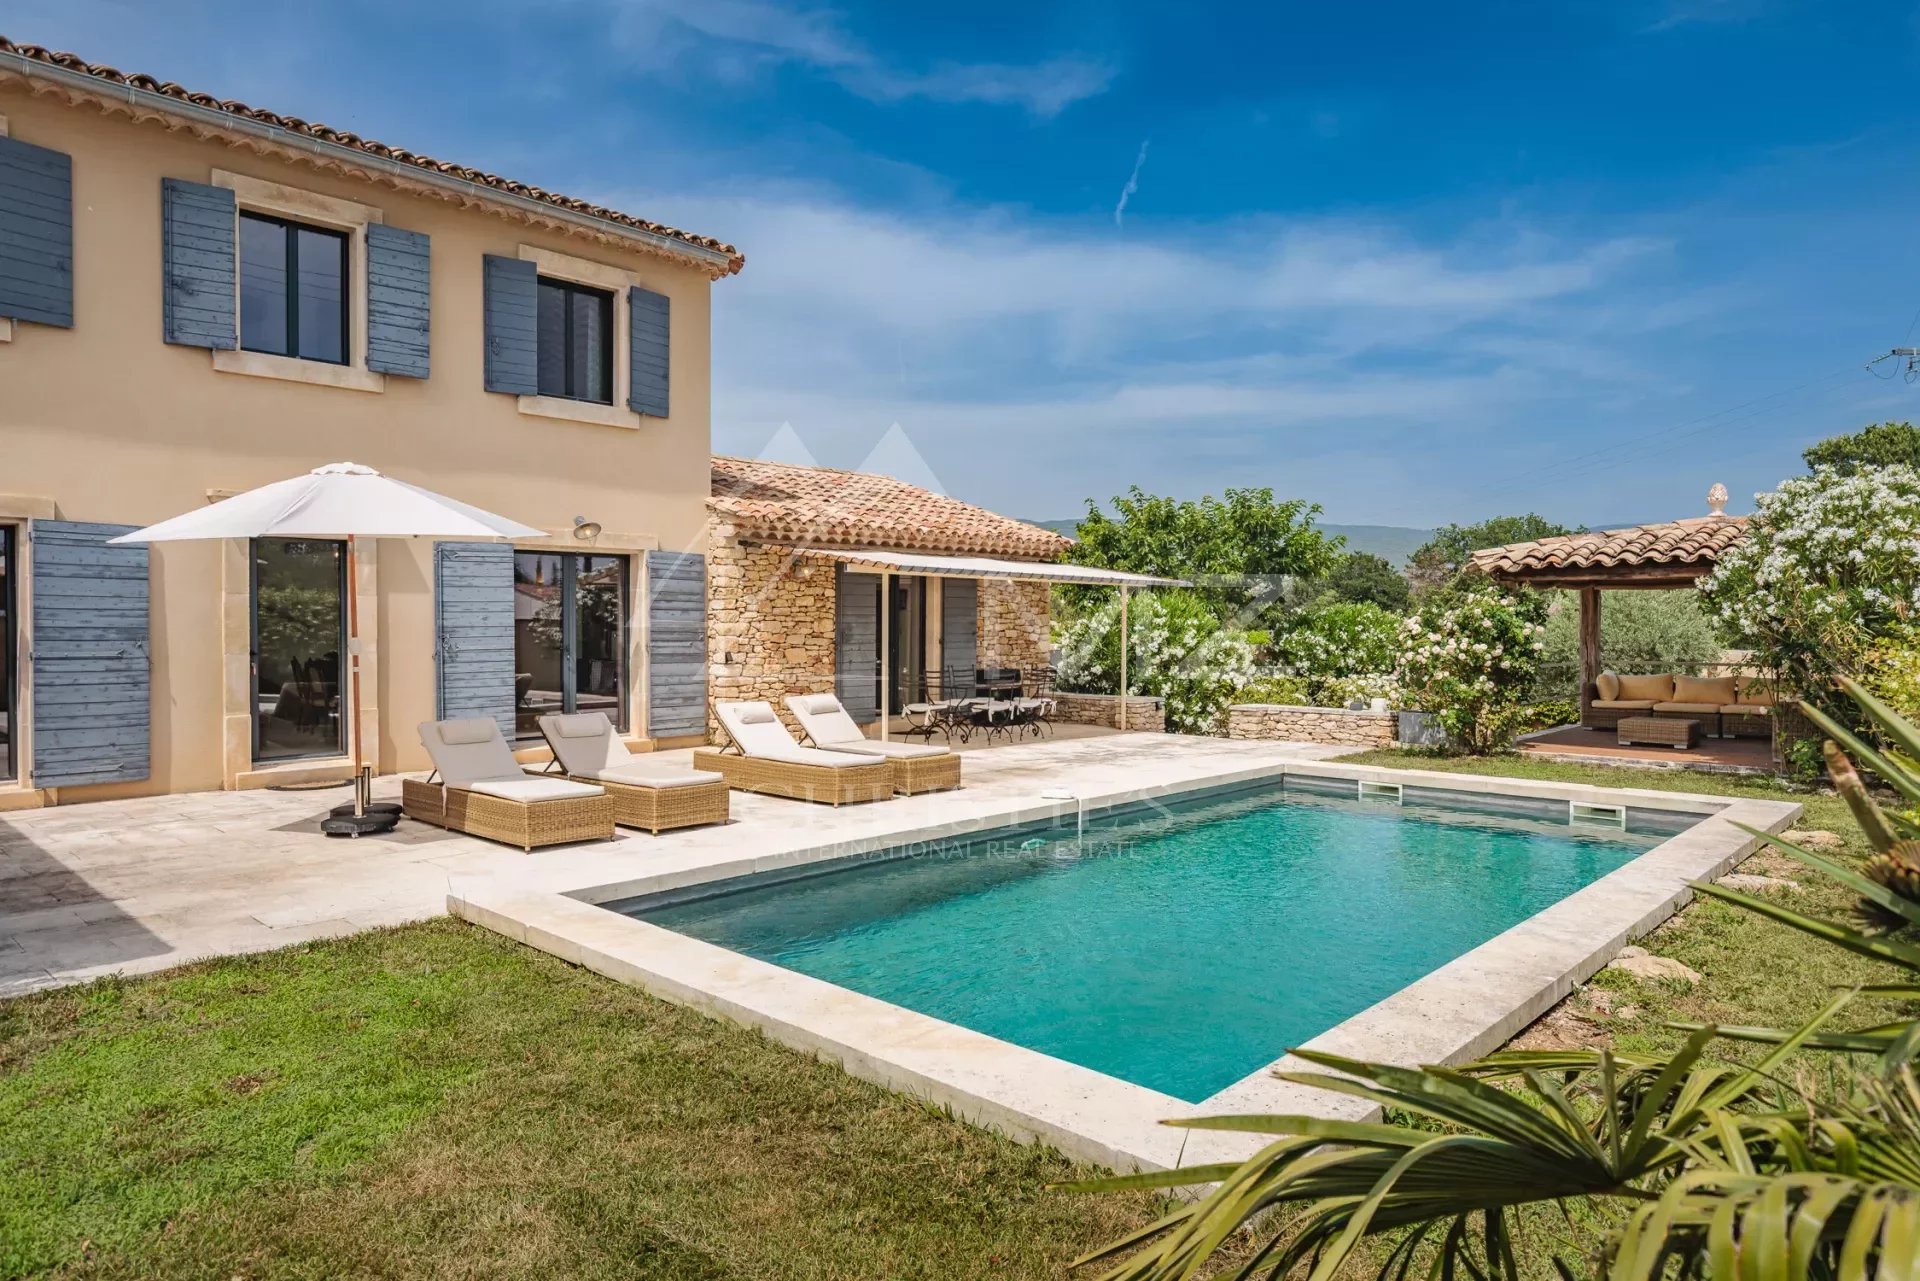 Luberon - Belle maison de vacances avec piscine chauffée